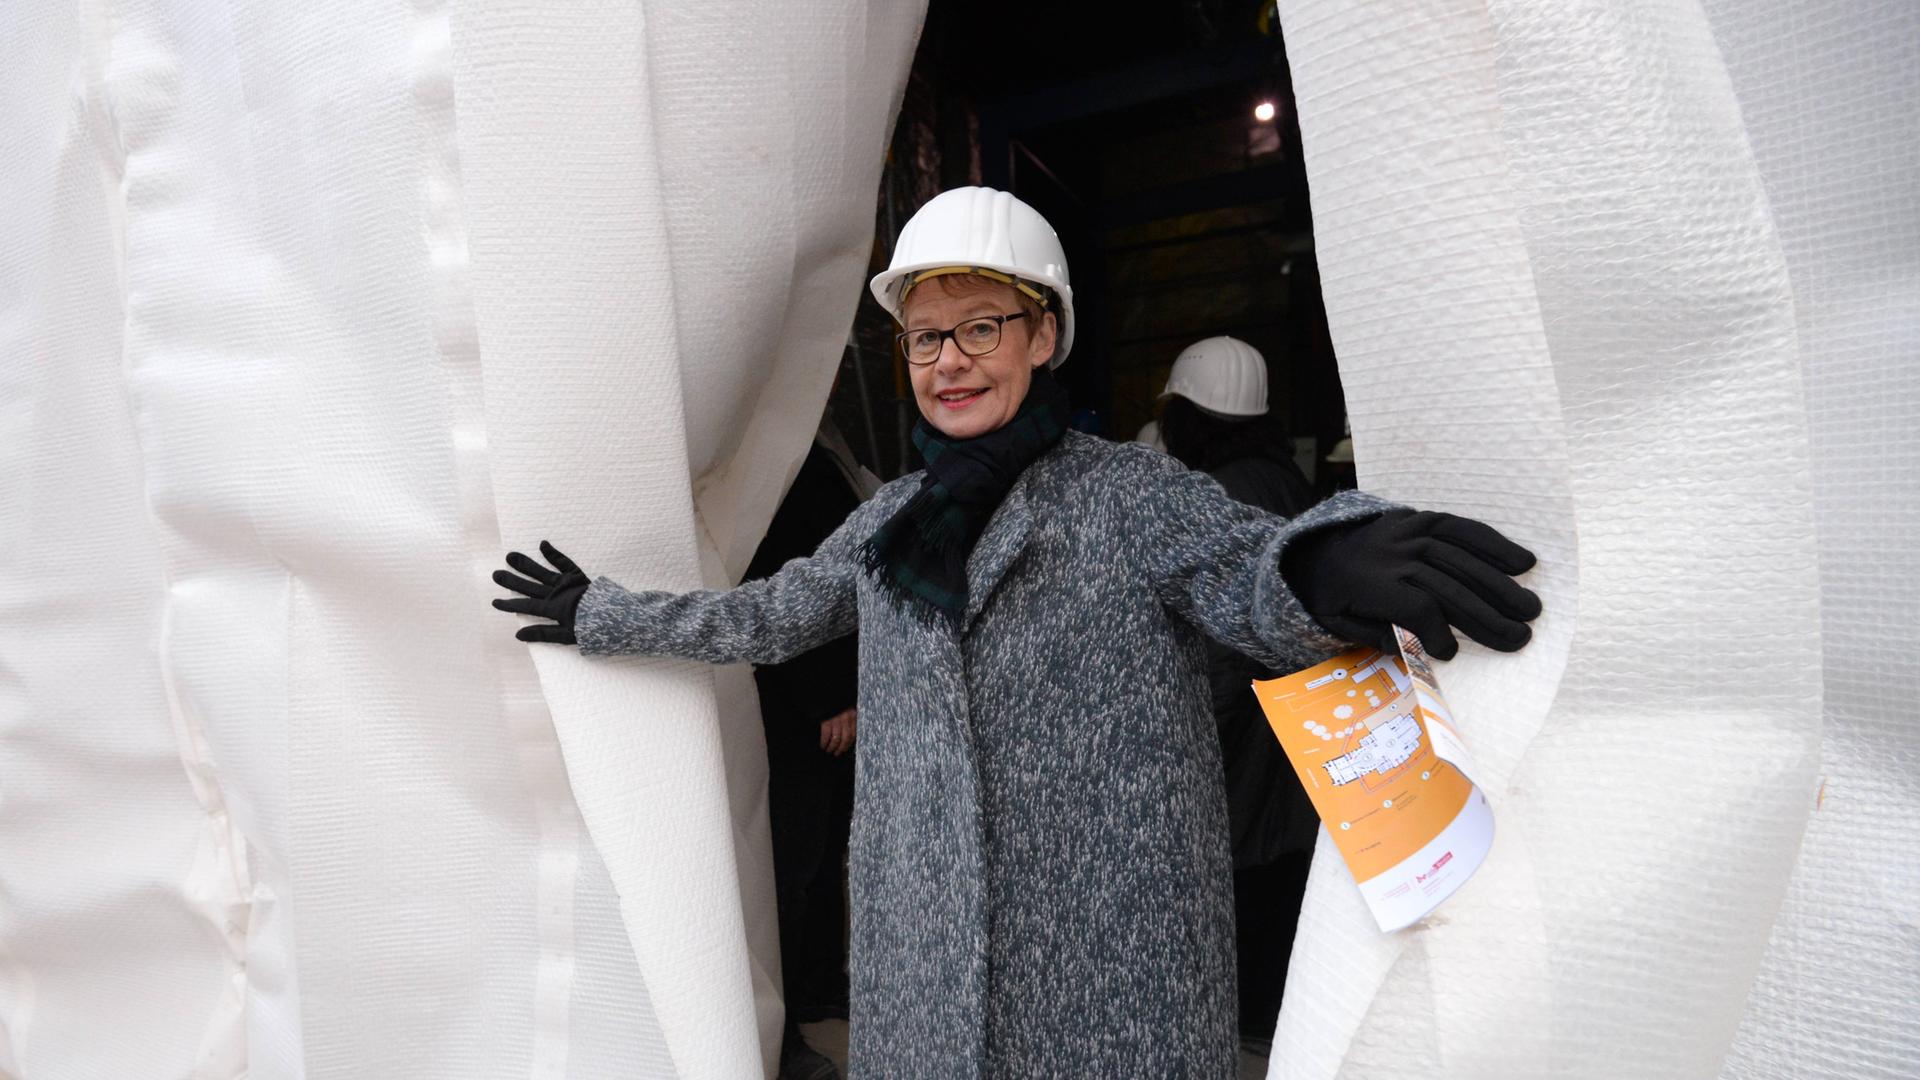 Die ehemalige Senatsbaudirektorin Regula Lüscher mit Bauarbeiterhelm schaut hinter einem Vorhang hervor anläßlich des Beginns der Sanierung der Staatsoper Unter den Linden im Dezember 2014.